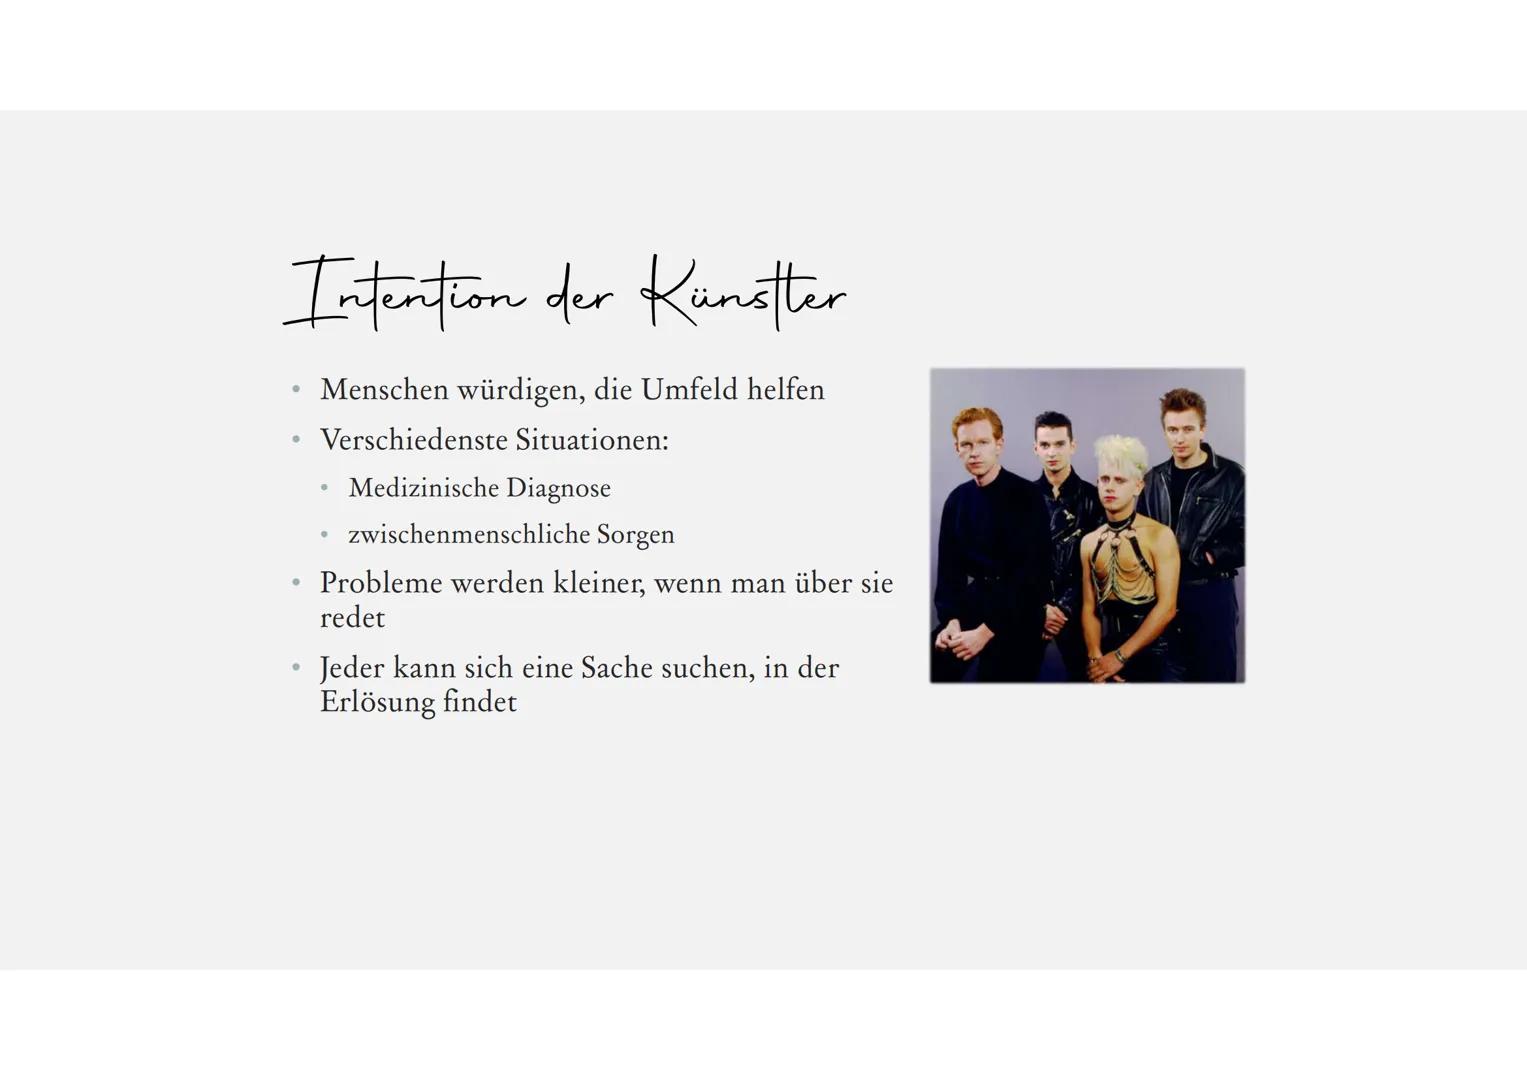 violator
Depeche Mode -
Personal Jesus
Eine Präsentation von Luise Hamsch Gliederung
Allgemeine Informationen
Songtext
●
●
●
Wichtige Stelle